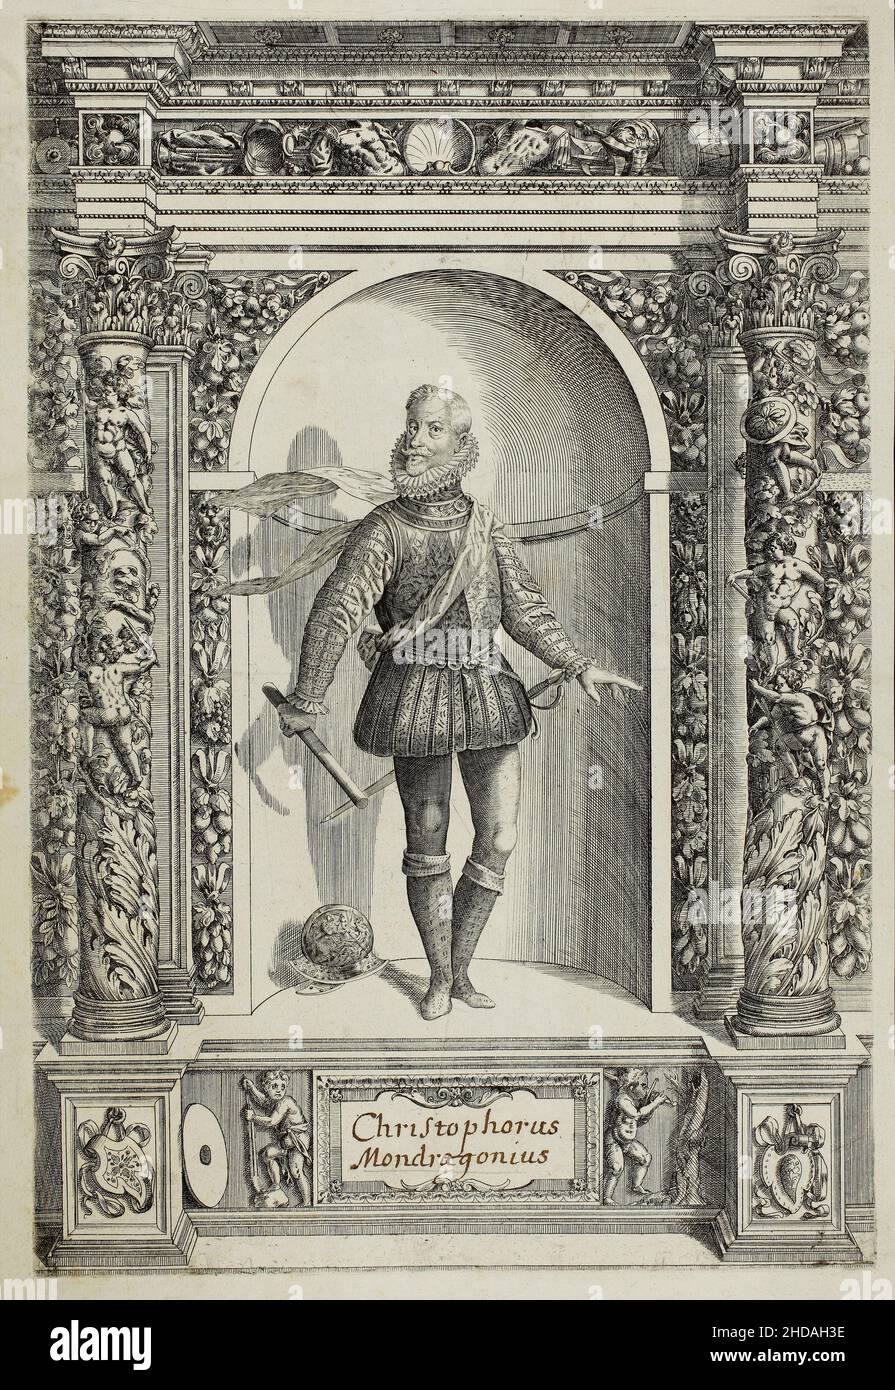 Gravurporträt von Christophorus Mondragonius. 1601 dieser Stich aus dem Buch der Waffensammlung Erzherzog Ferdinand, wurde zuerst veröffentlicht Stockfoto